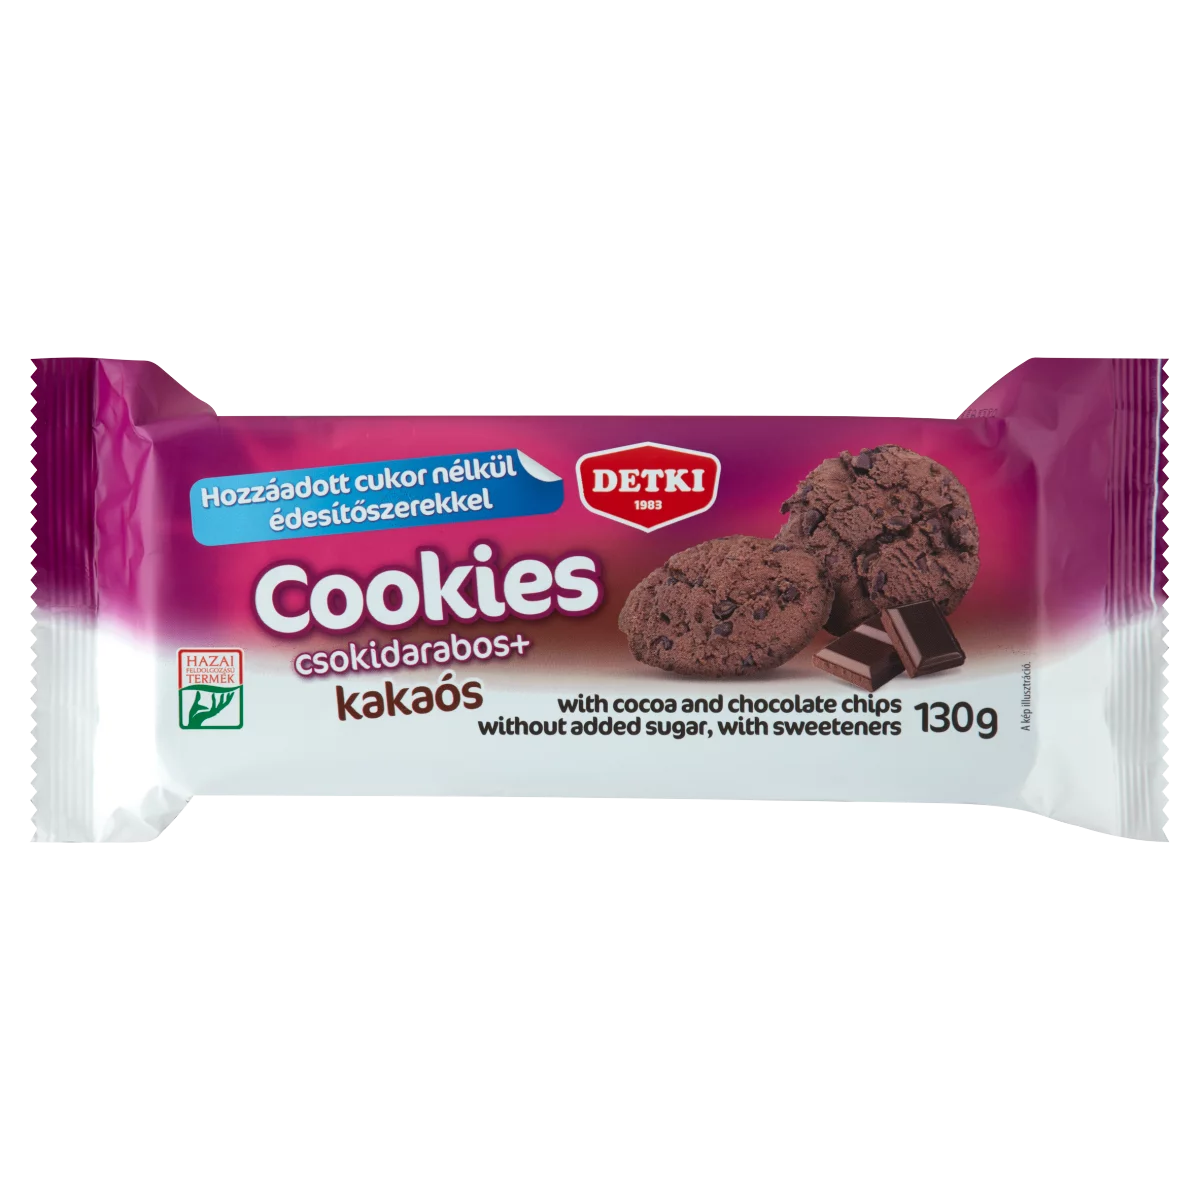 Detki Cookies csokidarabos + kakaós omlós keksz hozzáadott cukor nélkül, édesítőszerekkel 130 g